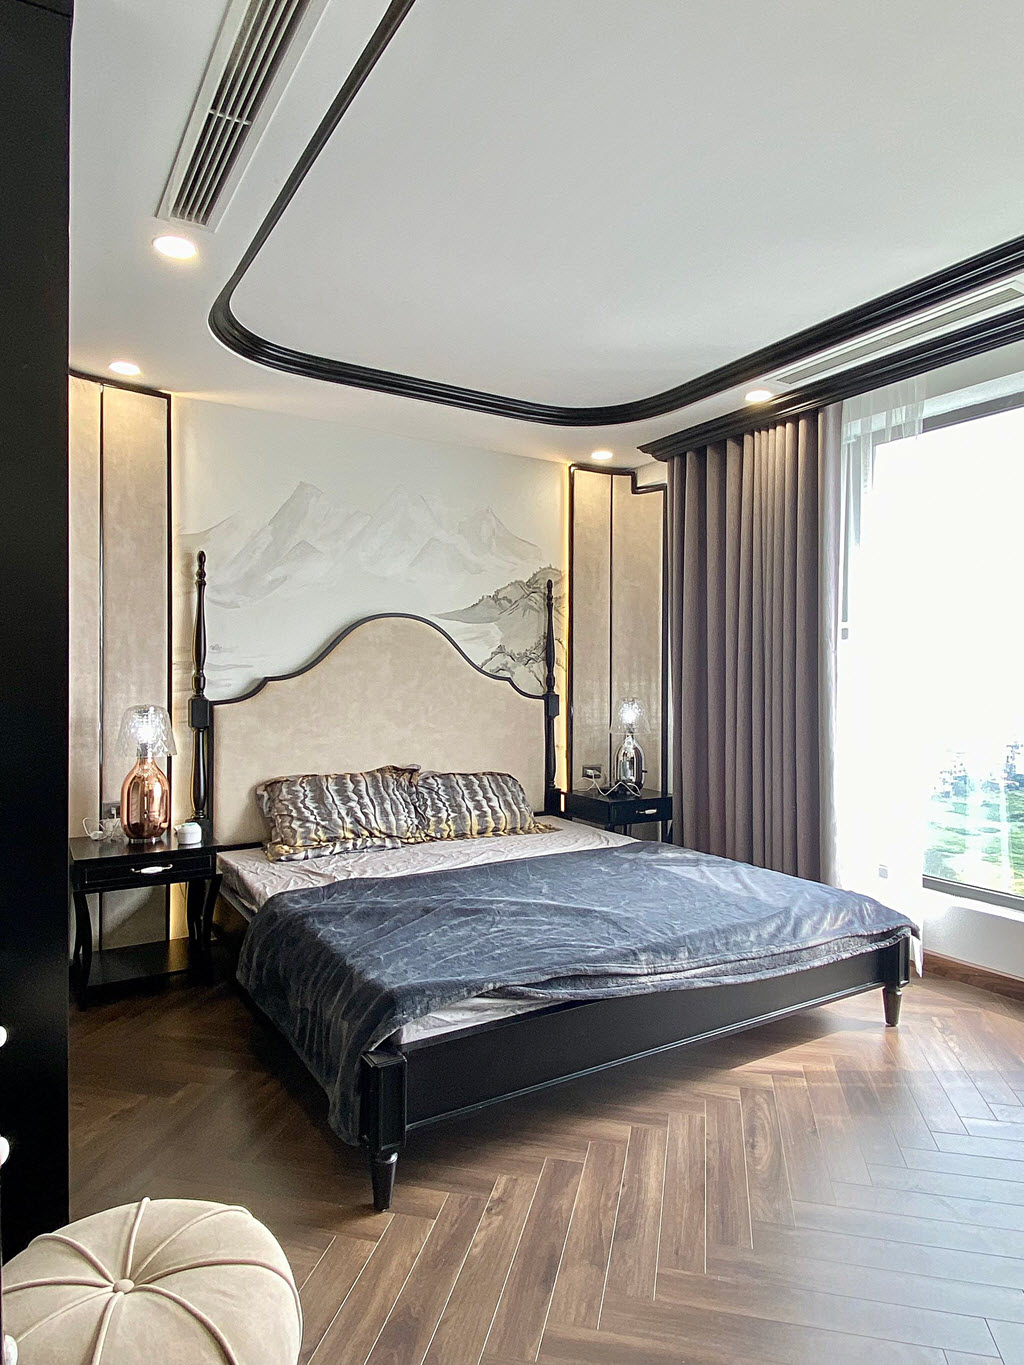 Phòng ngủ thứ ba sử dụng bảng màu xám trung tính chủ đạo, mang lại vẻ thanh lịch, tinh tế cho không gian nghỉ ngơi, thư giãn.